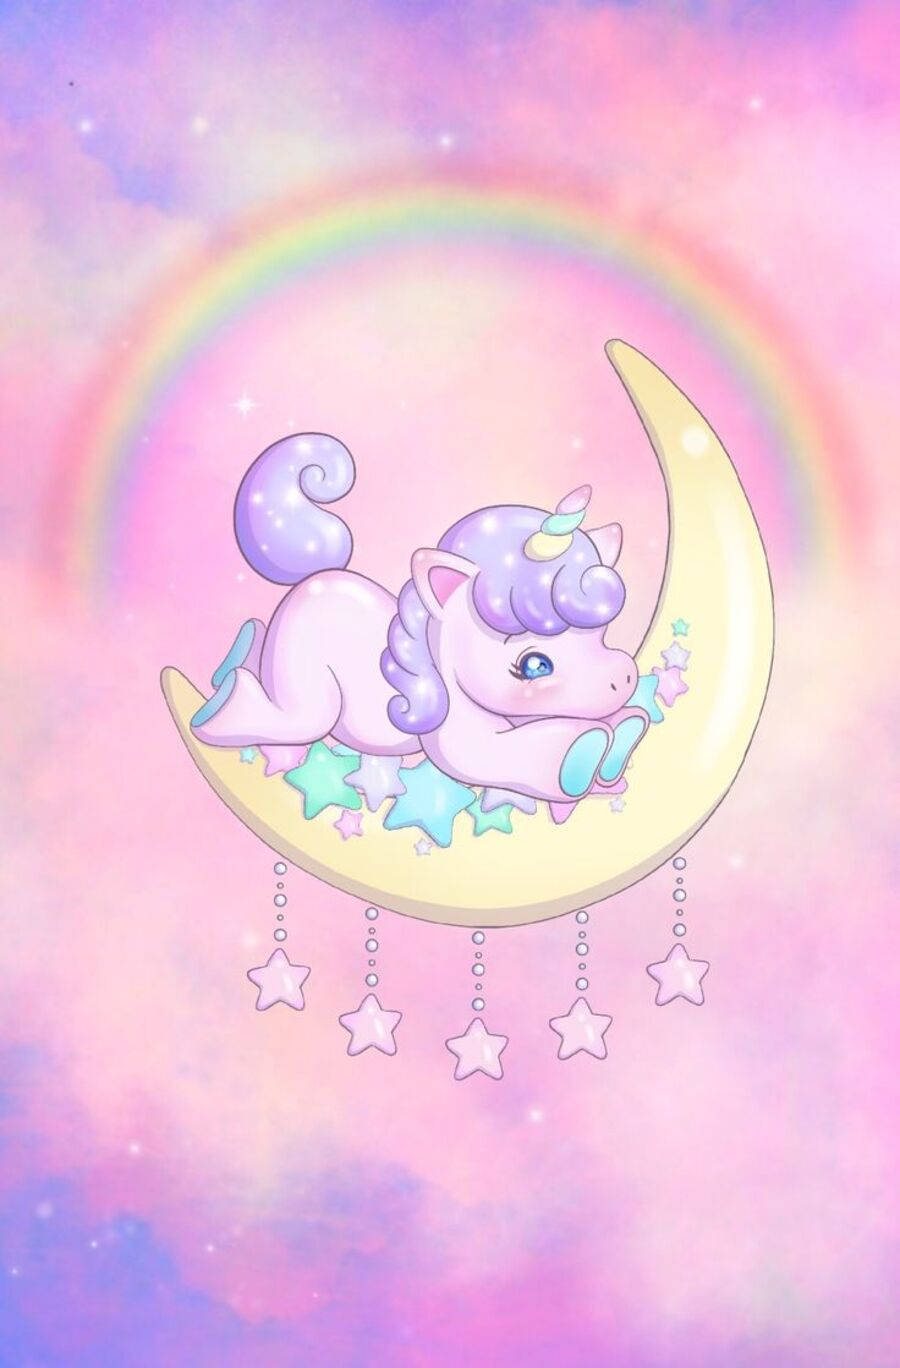 Galaxy Unicorn On Moon Cartoon Illustration Wallpaper